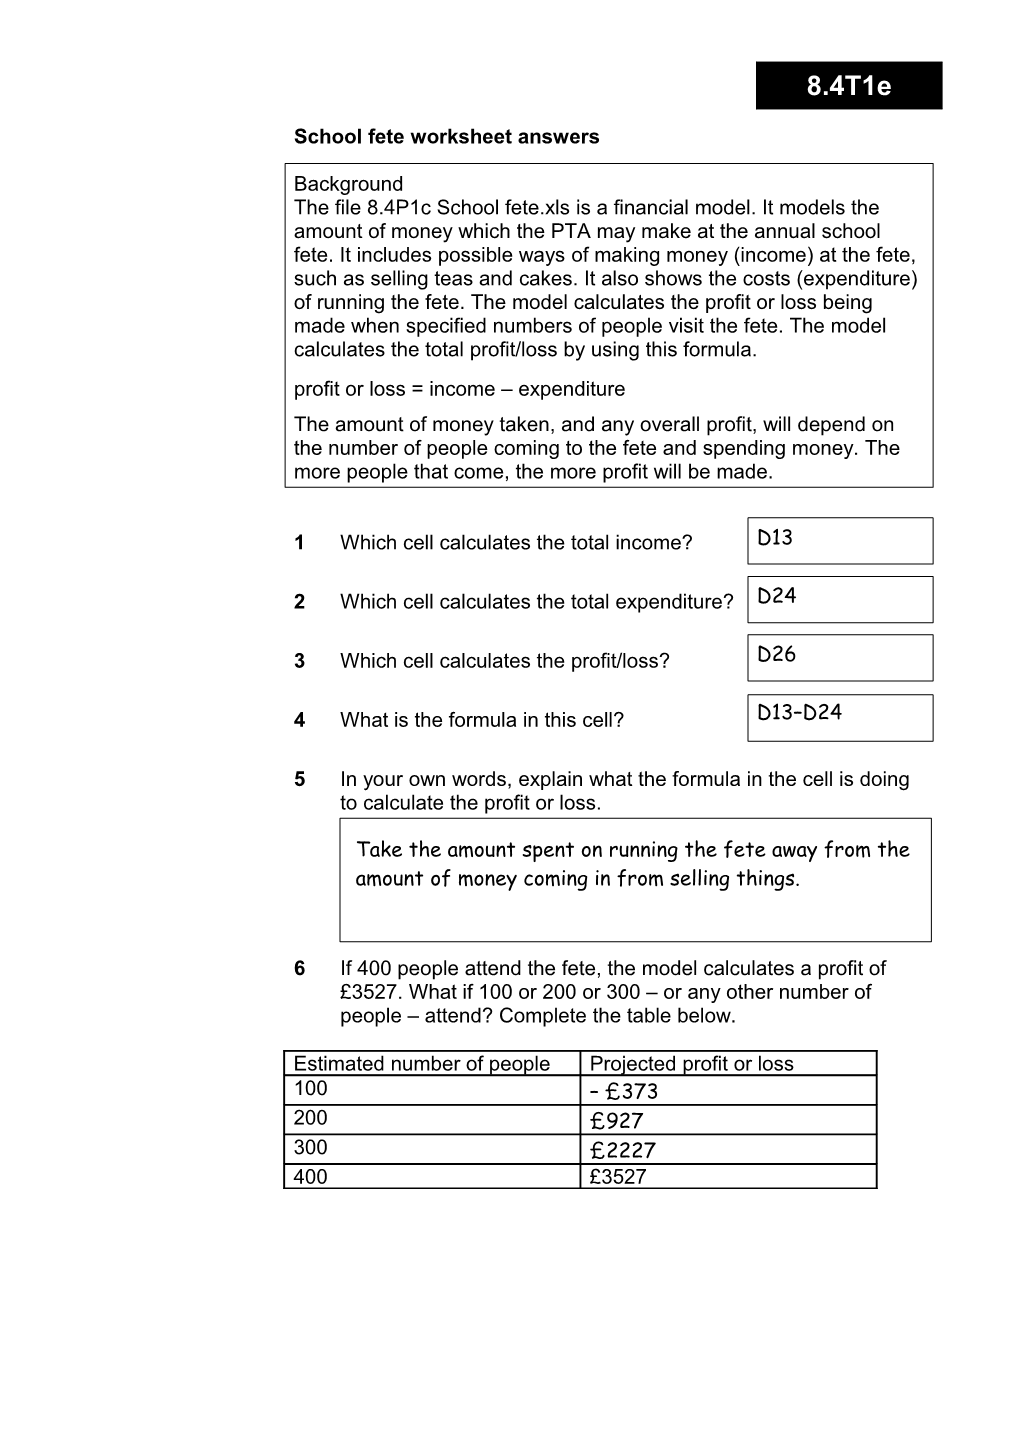 8.4T1e School Fete Worksheet Answers